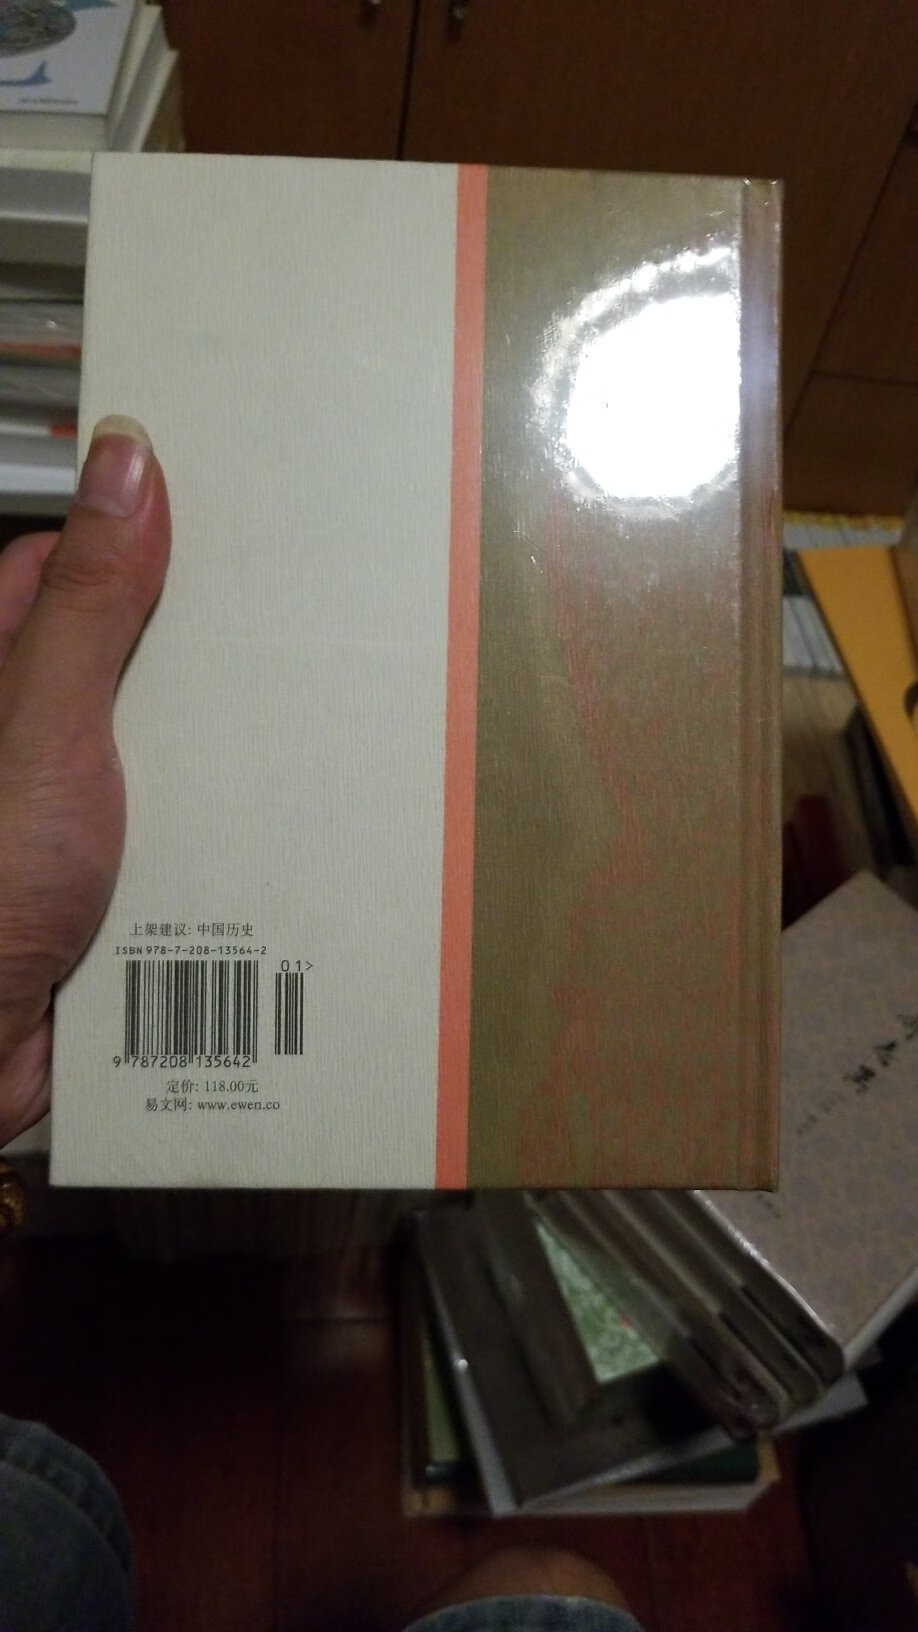 中华书局繁体竖排的王仲犖全集这本已经绝版了。迫不得及只能买这本，听说可以和陈寅恪对照着看。全是相反的结论！？